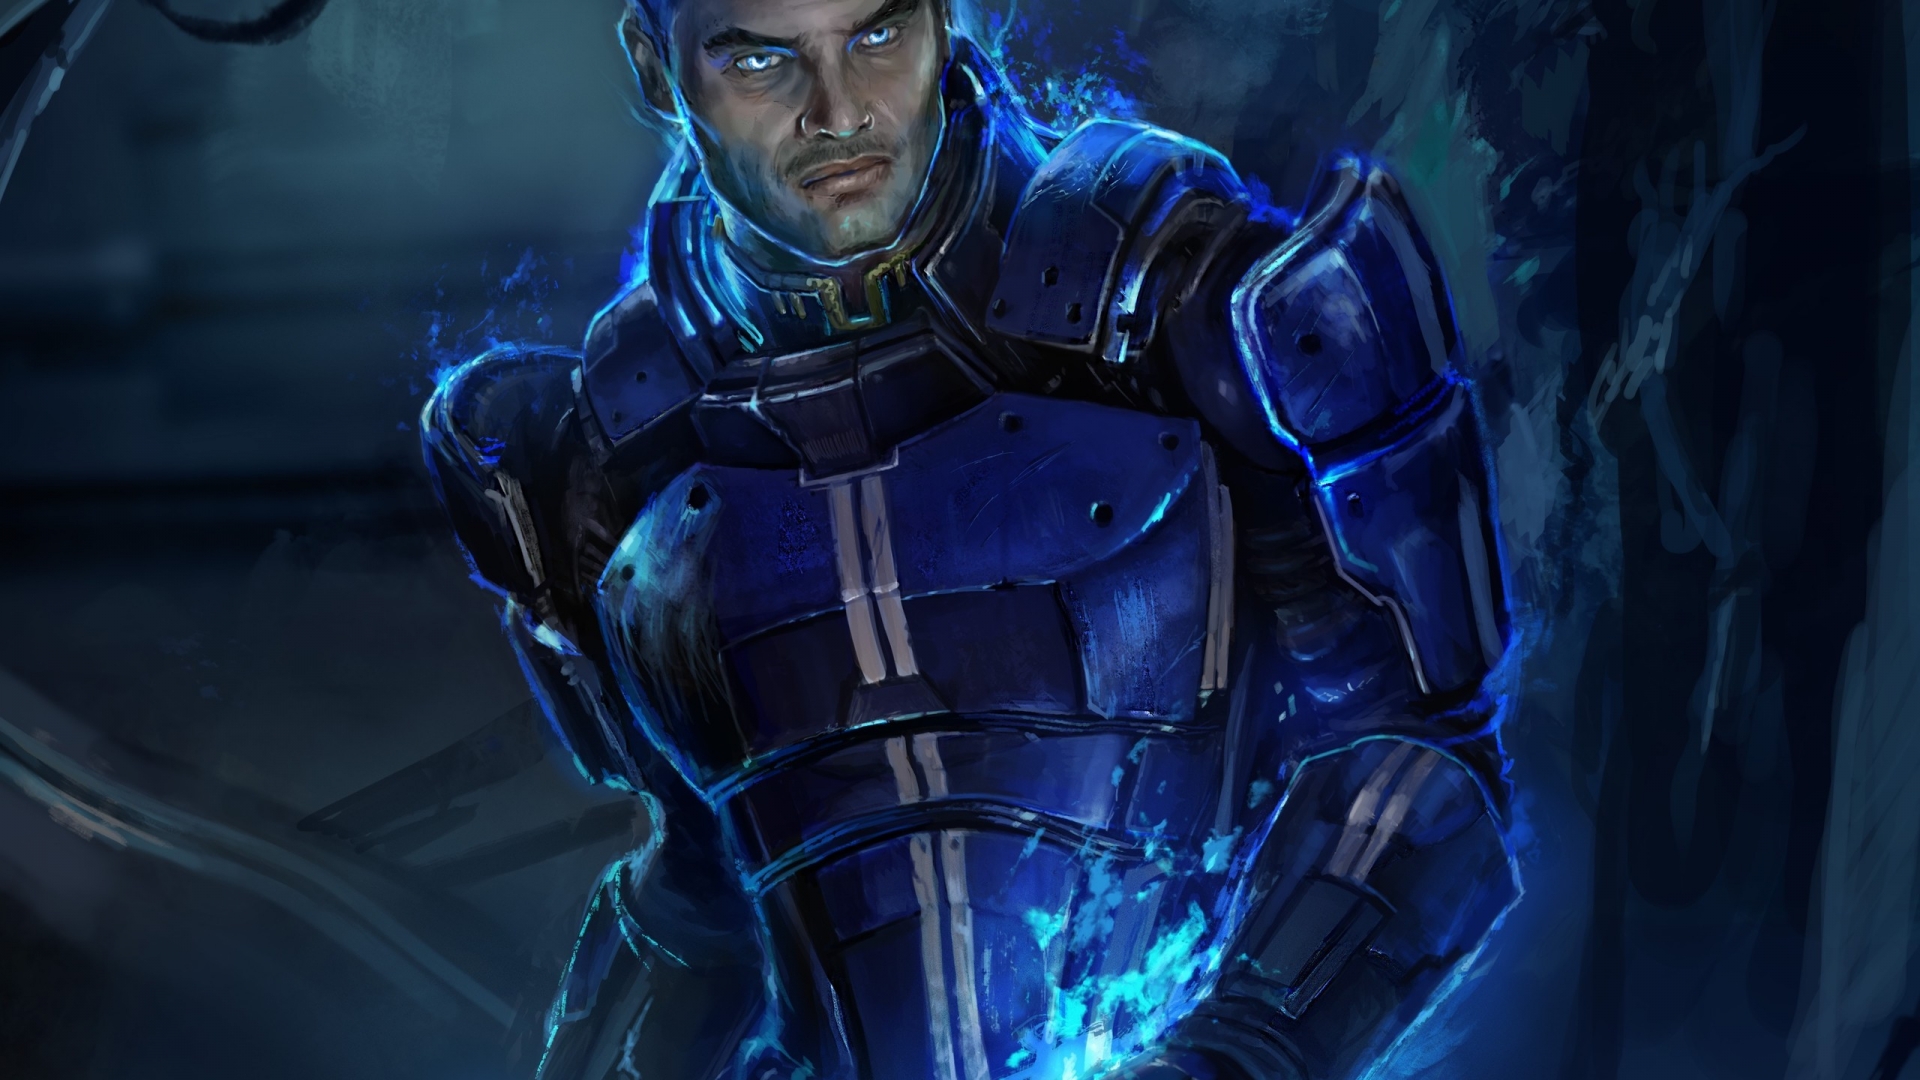 Kaidan Alenko Mass Effect 3 for 1920 x 1080 HDTV 1080p resolution